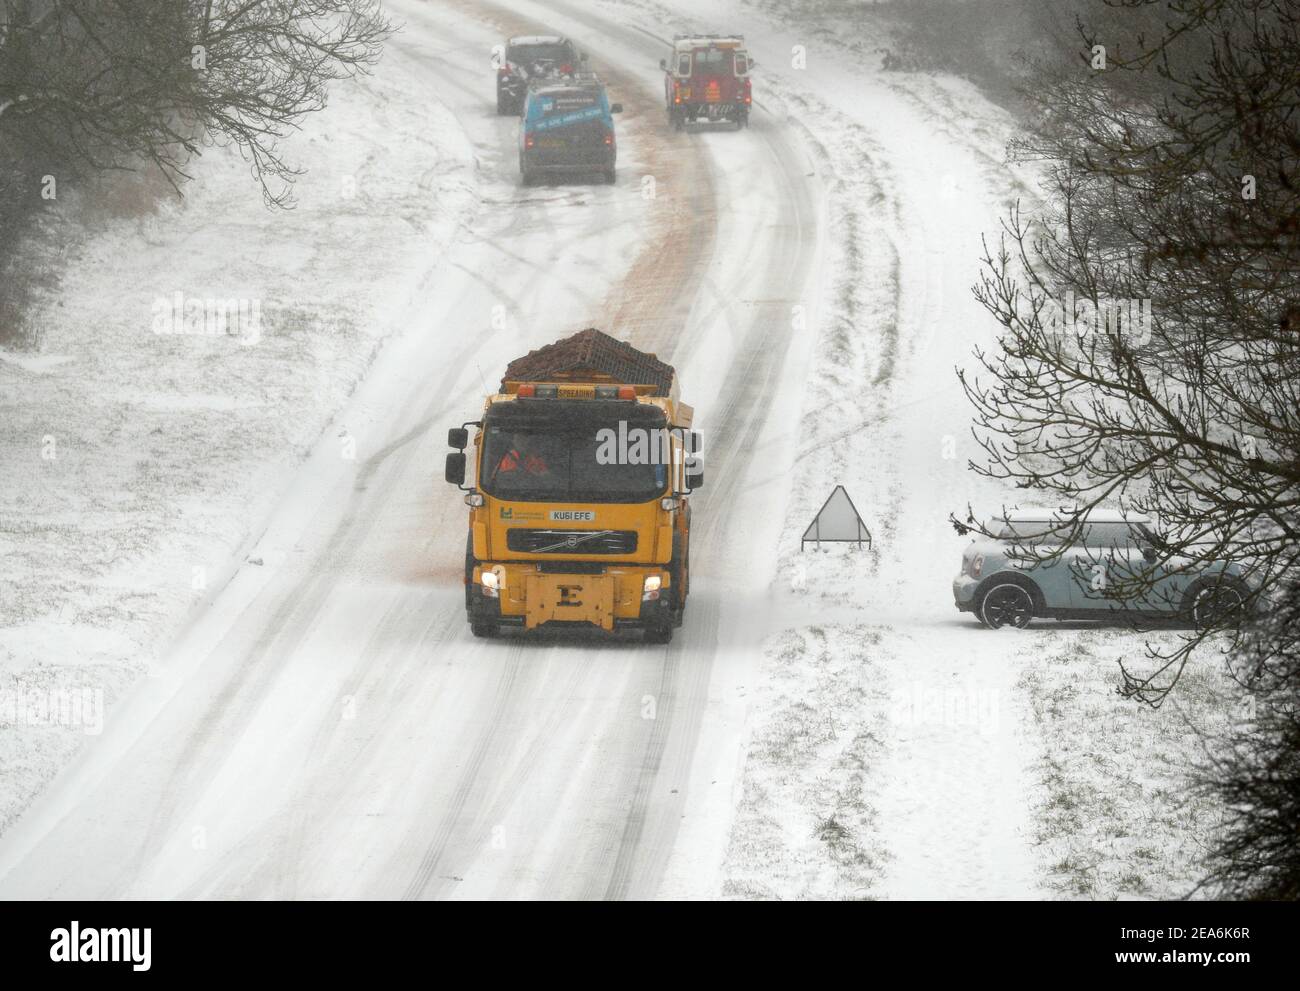 Uppingham, Rutland, Großbritannien. 8th. Februar 2021. Wetter in Großbritannien. Ein Gitterwagen wird auf einem Schnee- und eisbedeckten Hügel an gestrandeten Autofahrern vorbeigefahren. Credit Darren Staples/Alamy Live News. Stockfoto